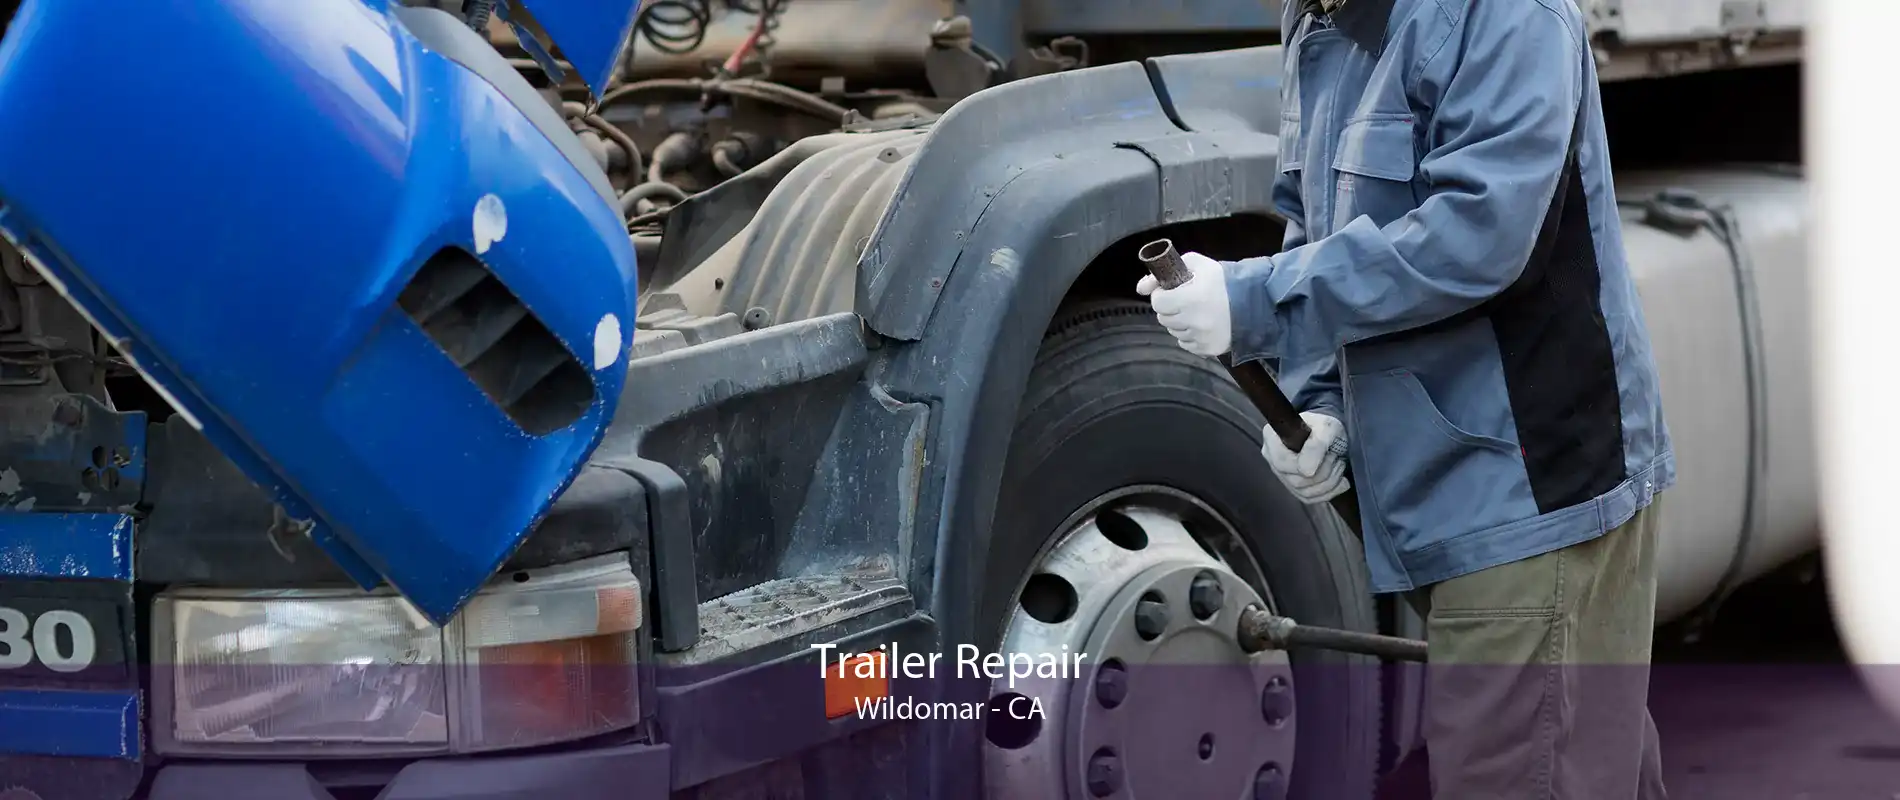 Trailer Repair Wildomar - CA